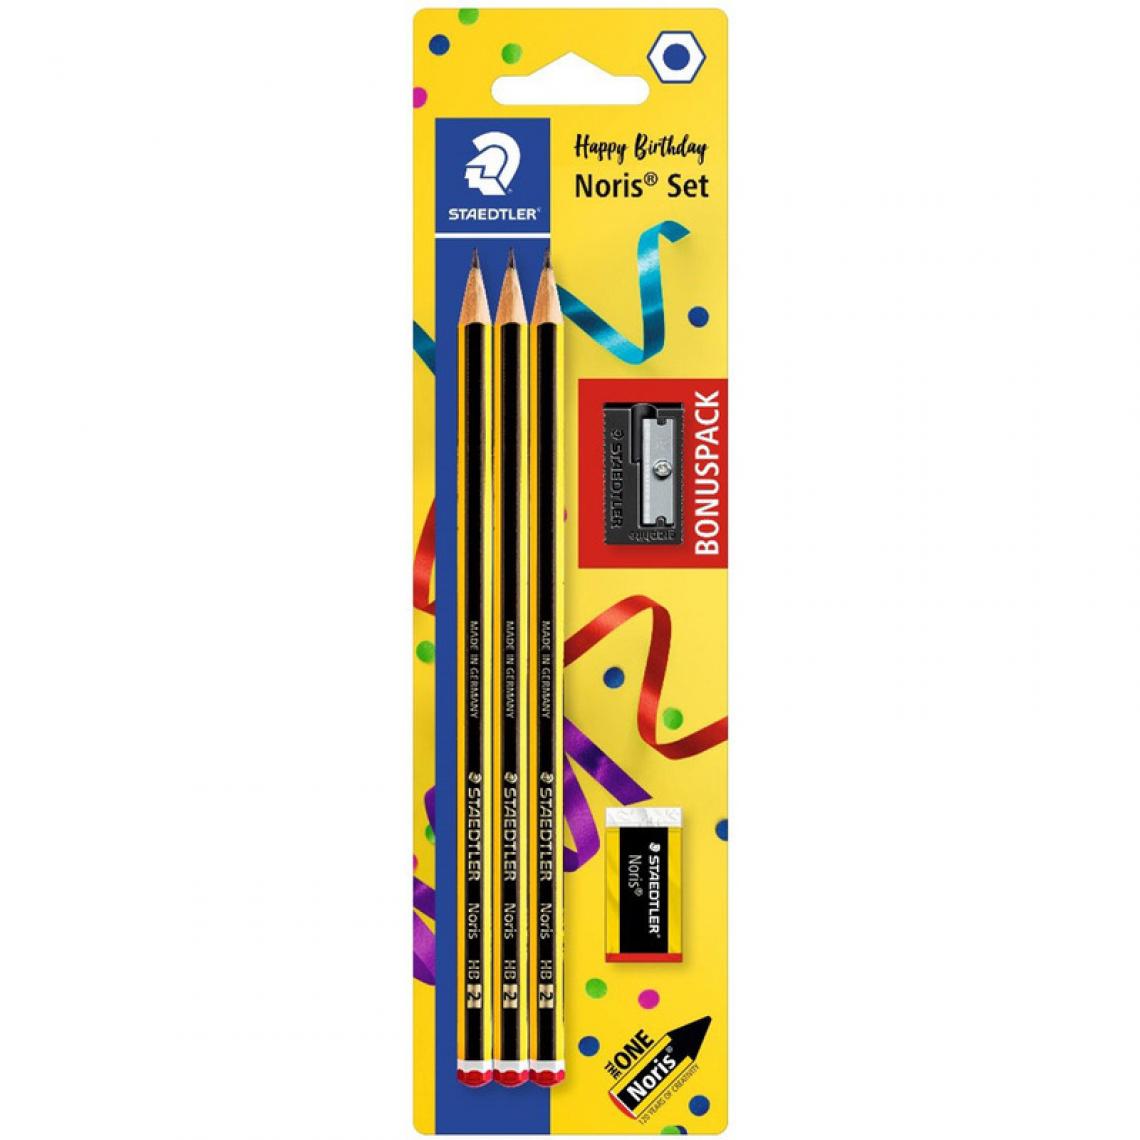 Staedtler - STAEDTLER Kit de crayons Anniversaire Noris, carte blister () - Outils et accessoires du peintre